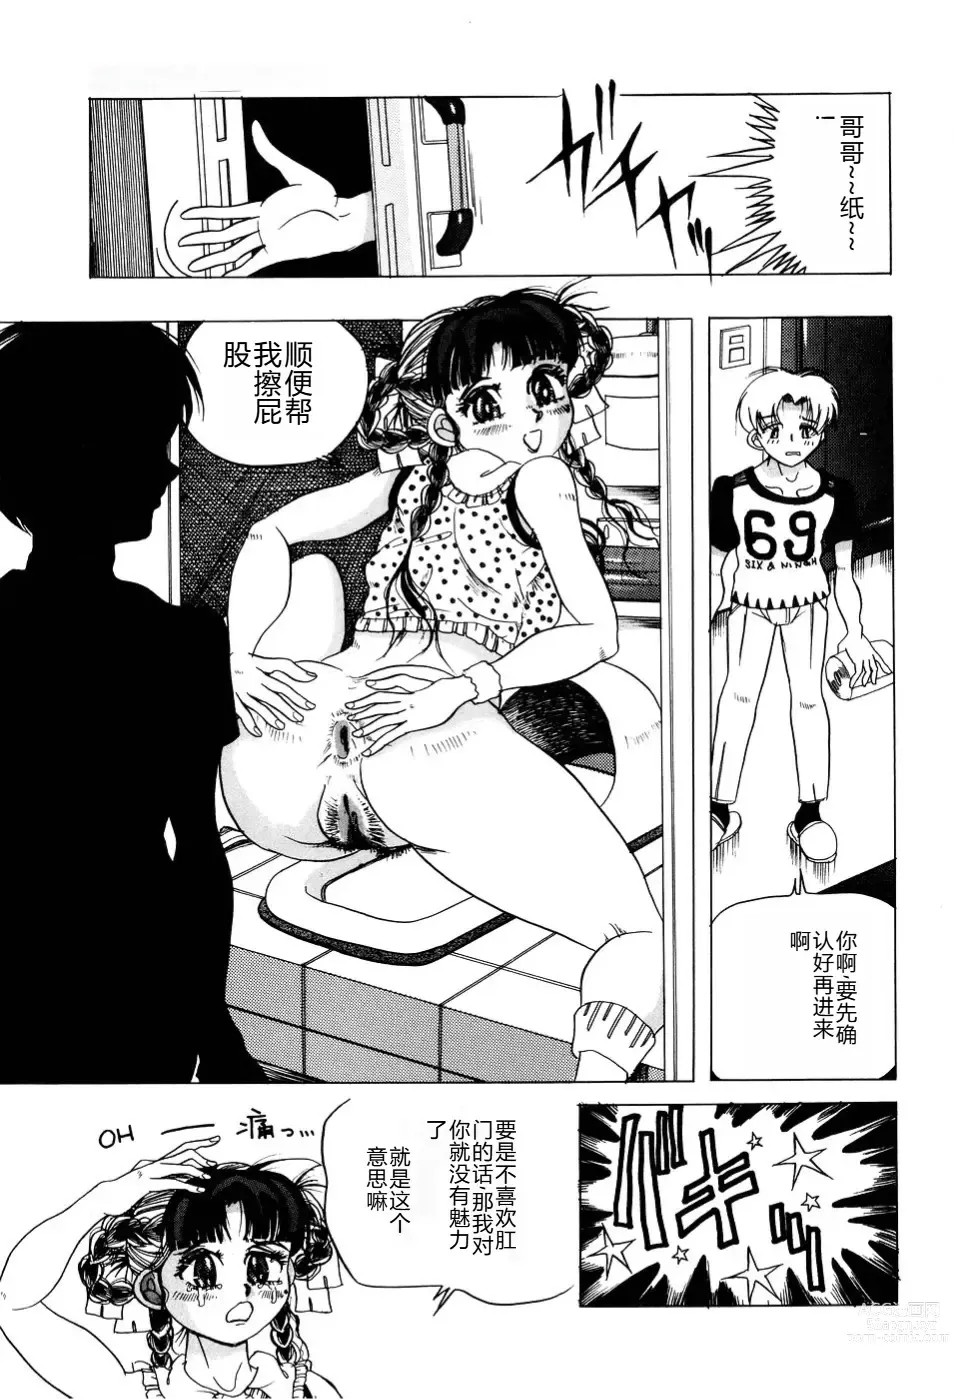 Page 148 of manga Kusozume Benkihime